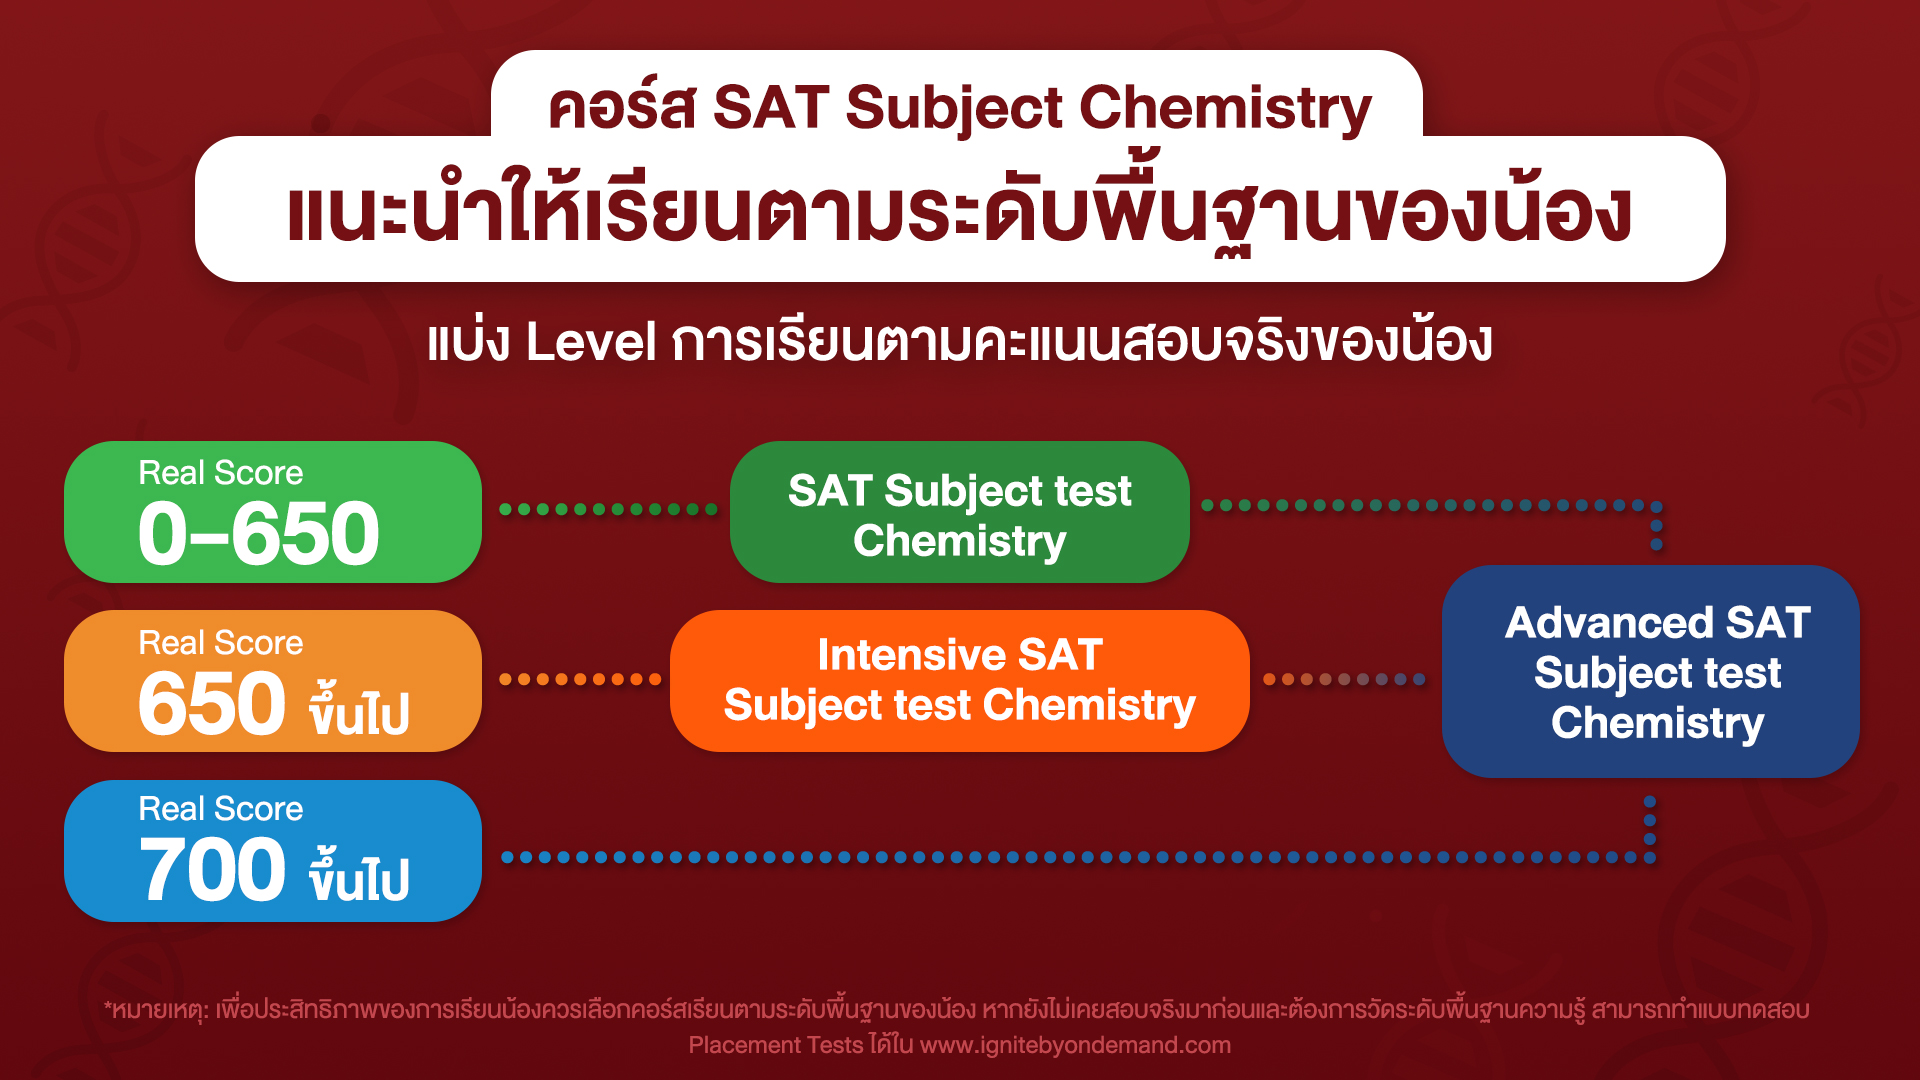 เทคนิคเรียน - SAT Subject Test Chemistry - ตามระดับพื้นฐาน - bigcover4